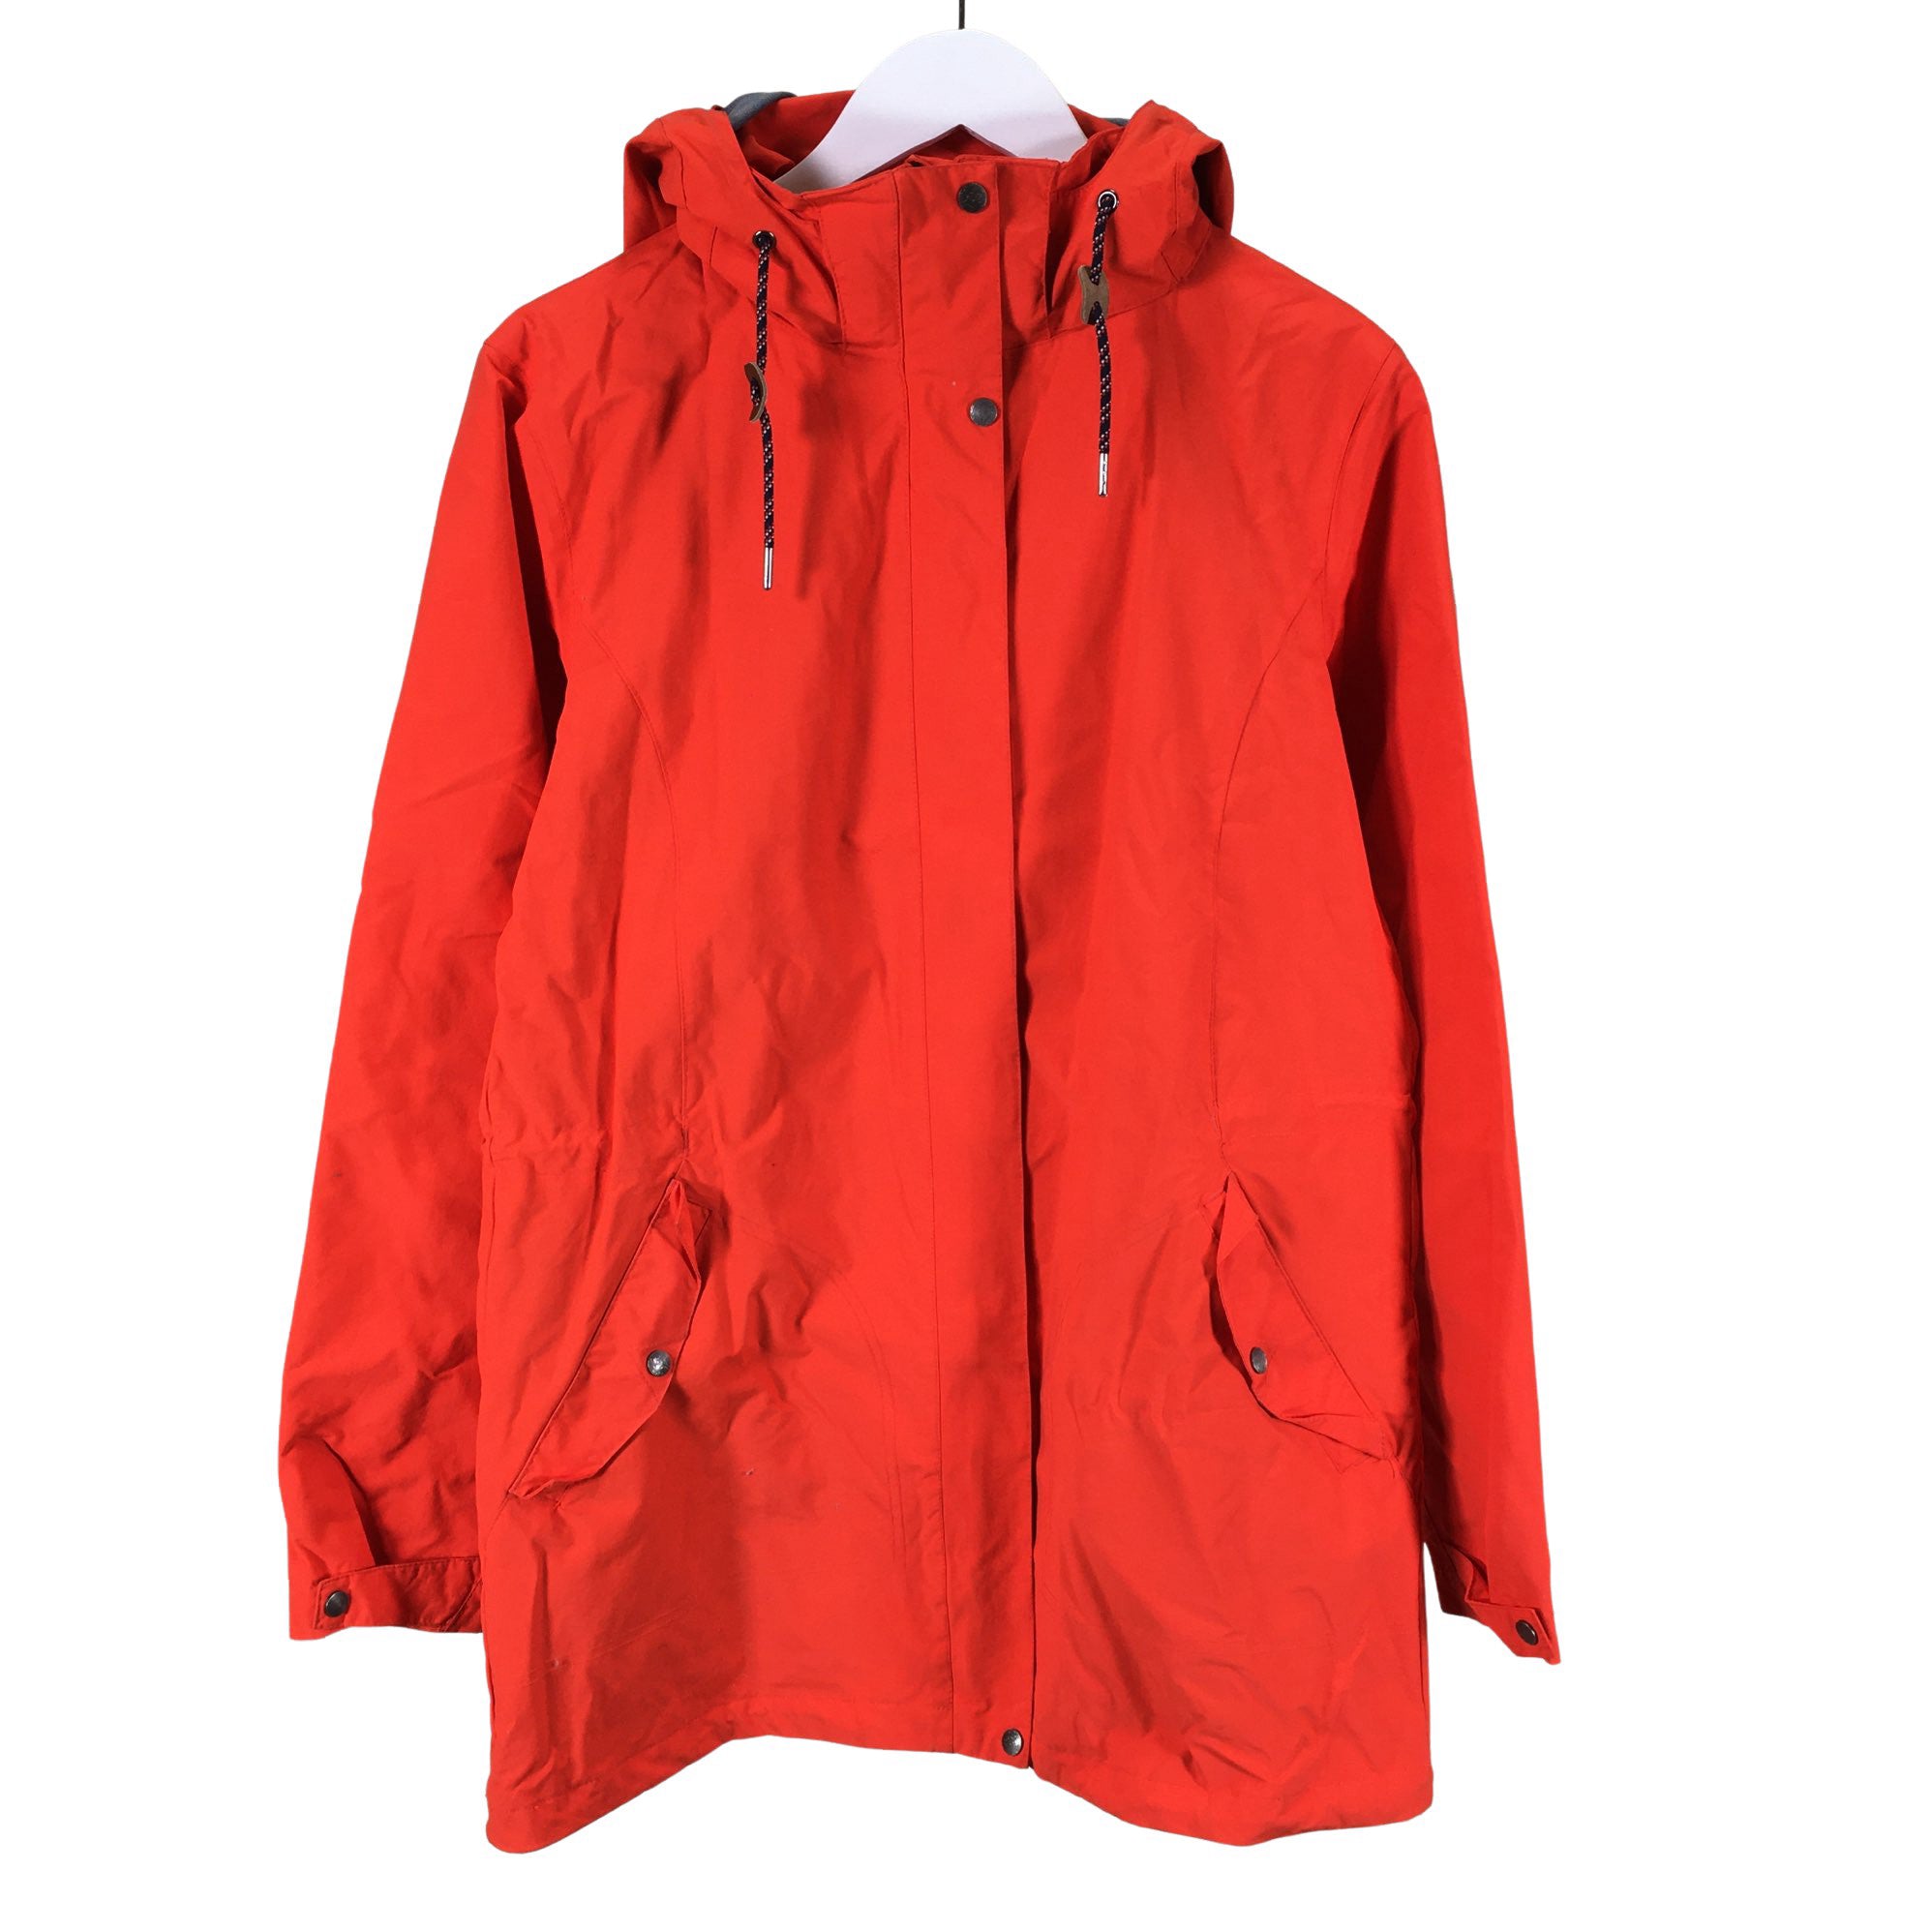 Women's Raiski Outdoor jacket, size 42 (Red) | Emmy